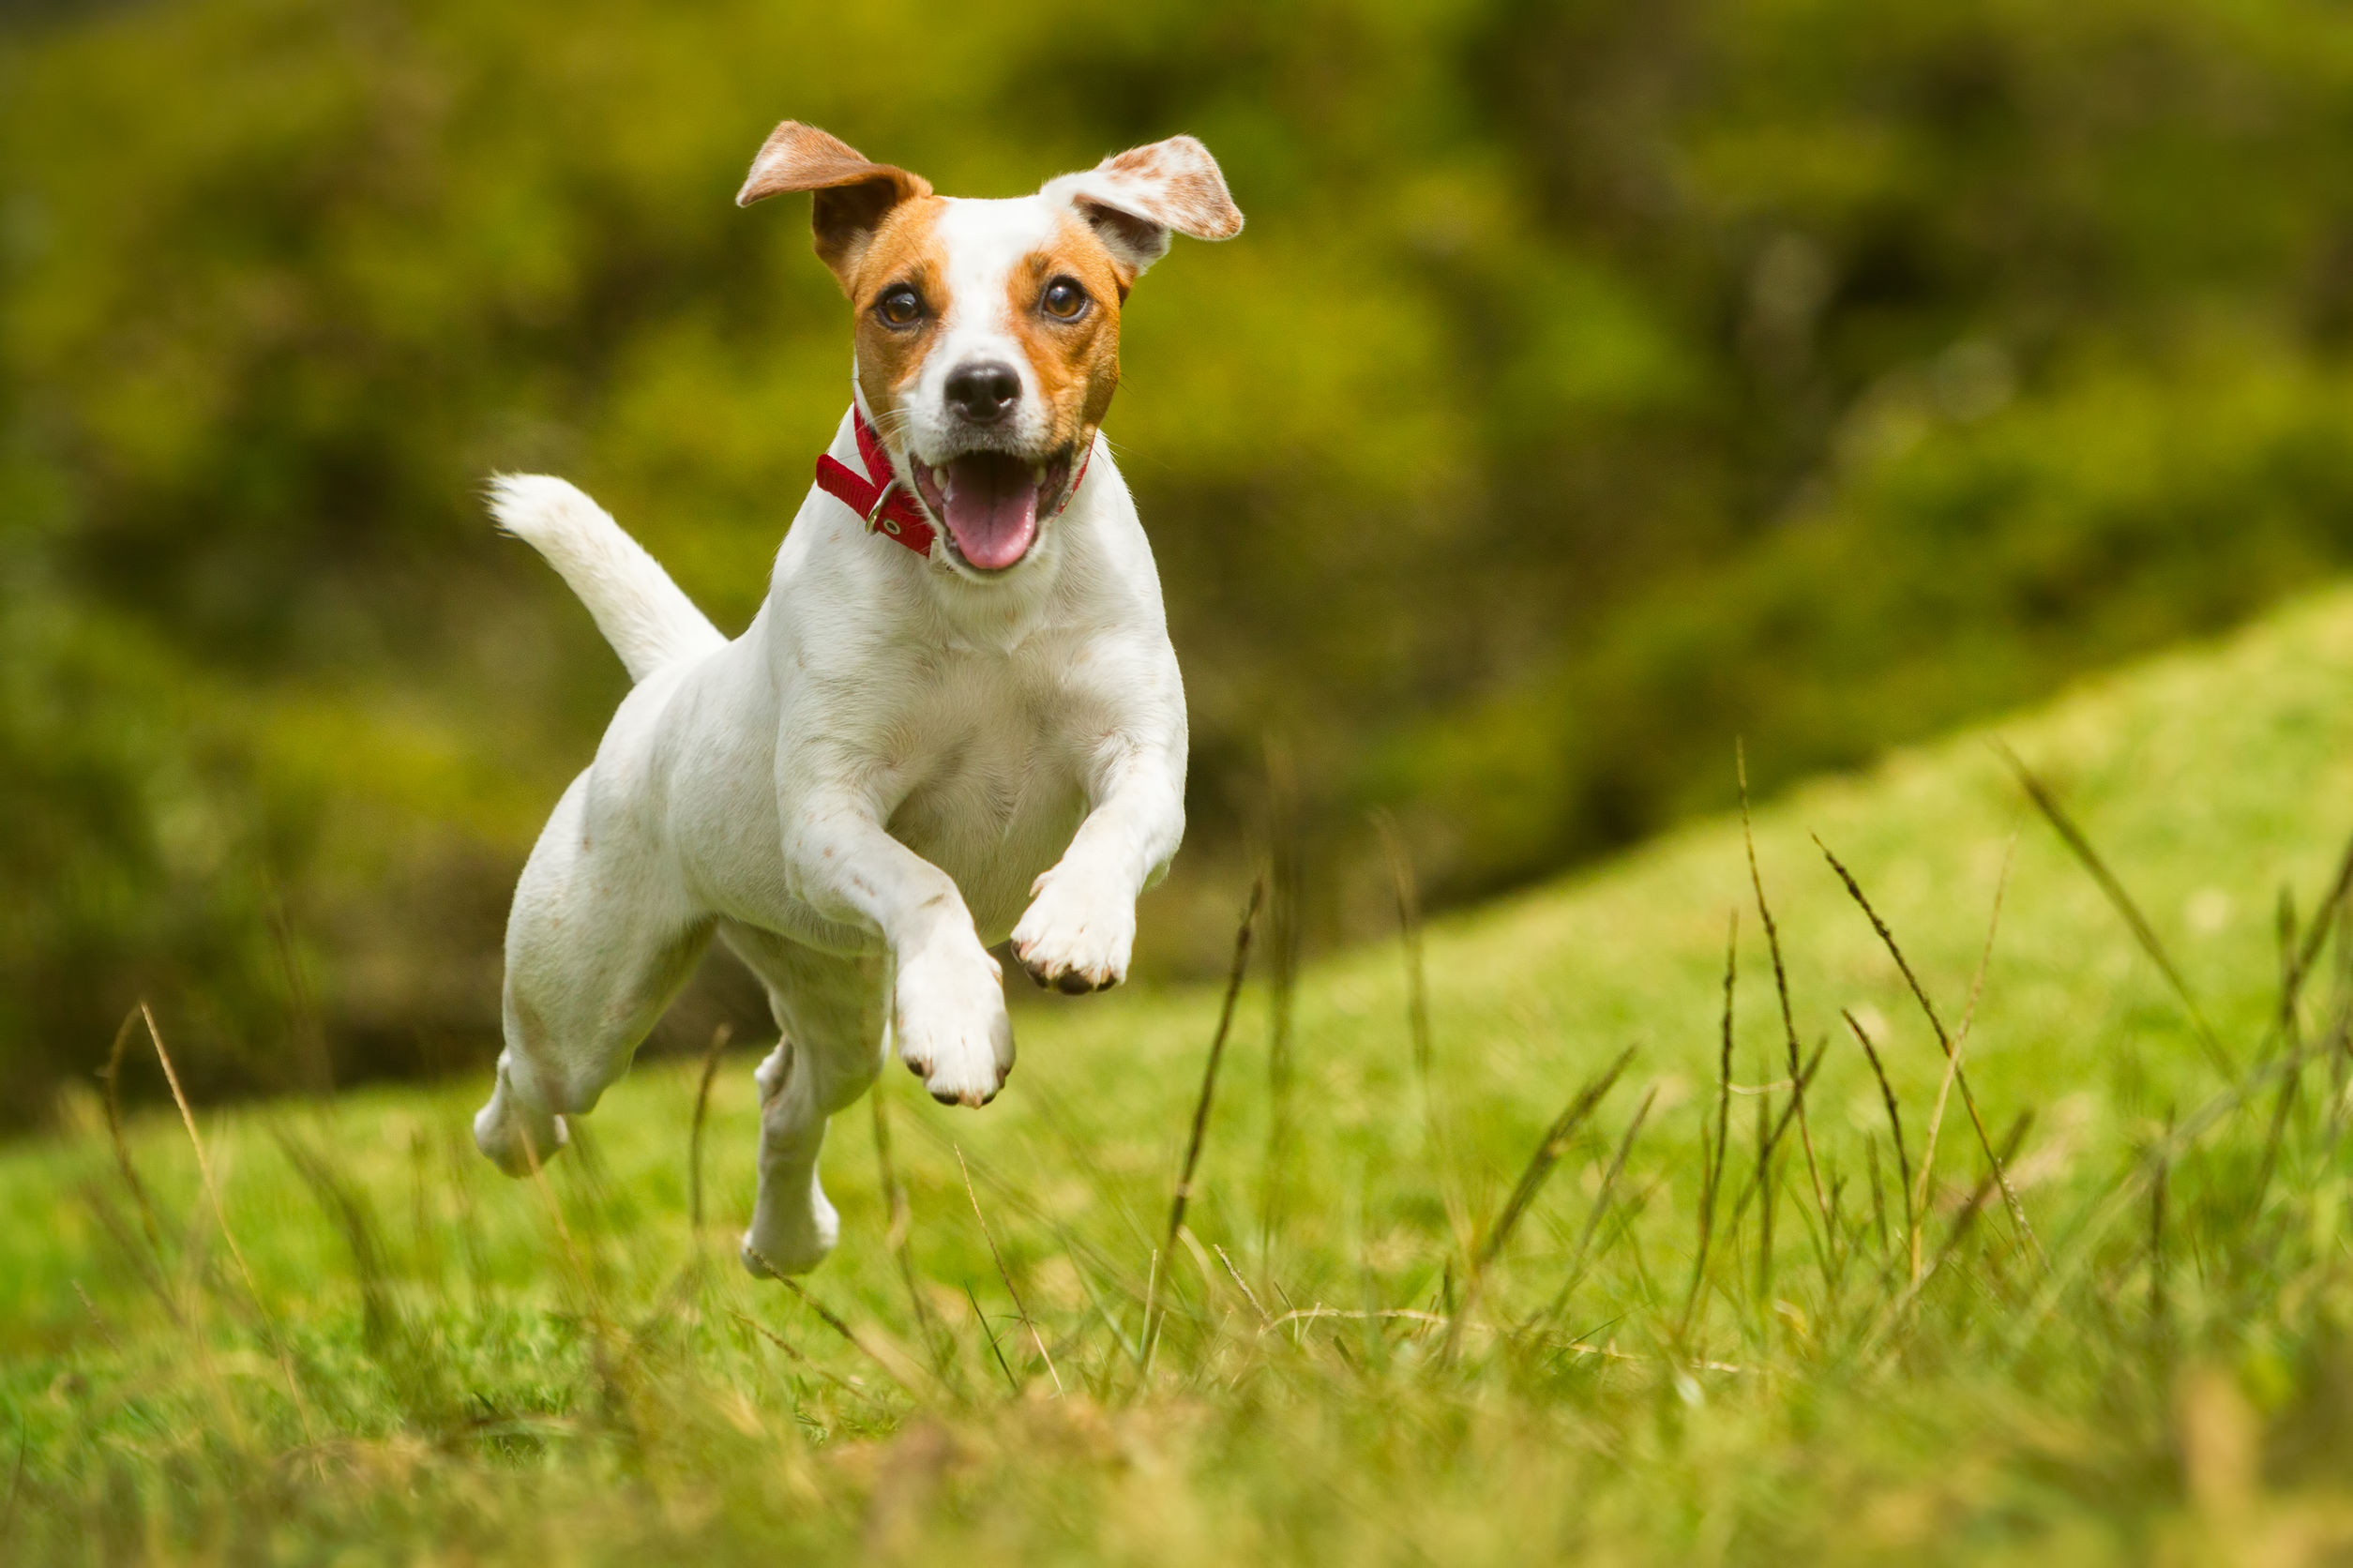 Małe psy do mieszkania — poznaj 5 idealnych kandydatów